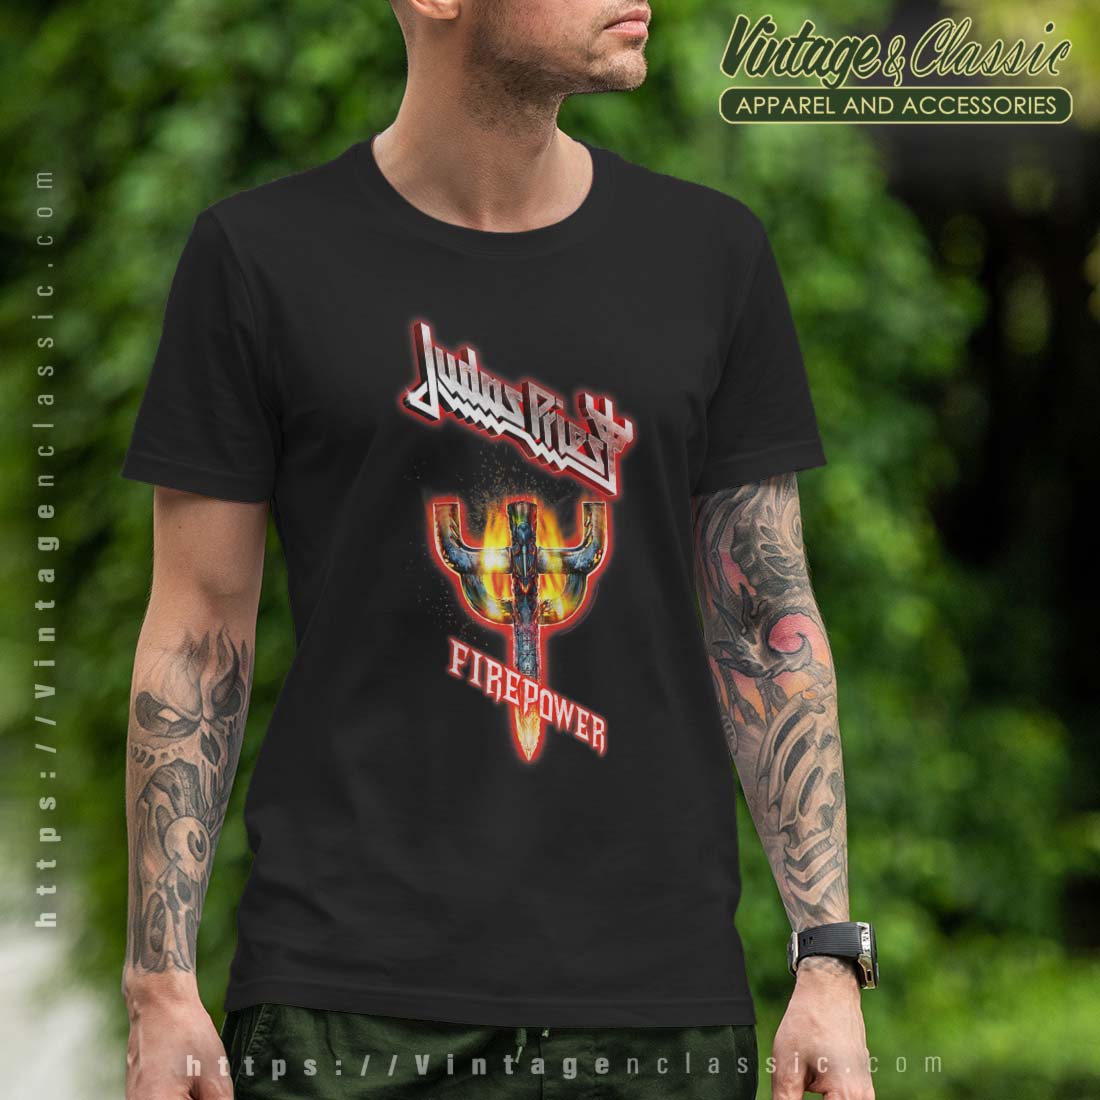 Judas Priest Firepower Emblem Shirt - Vintagenclassic Tee